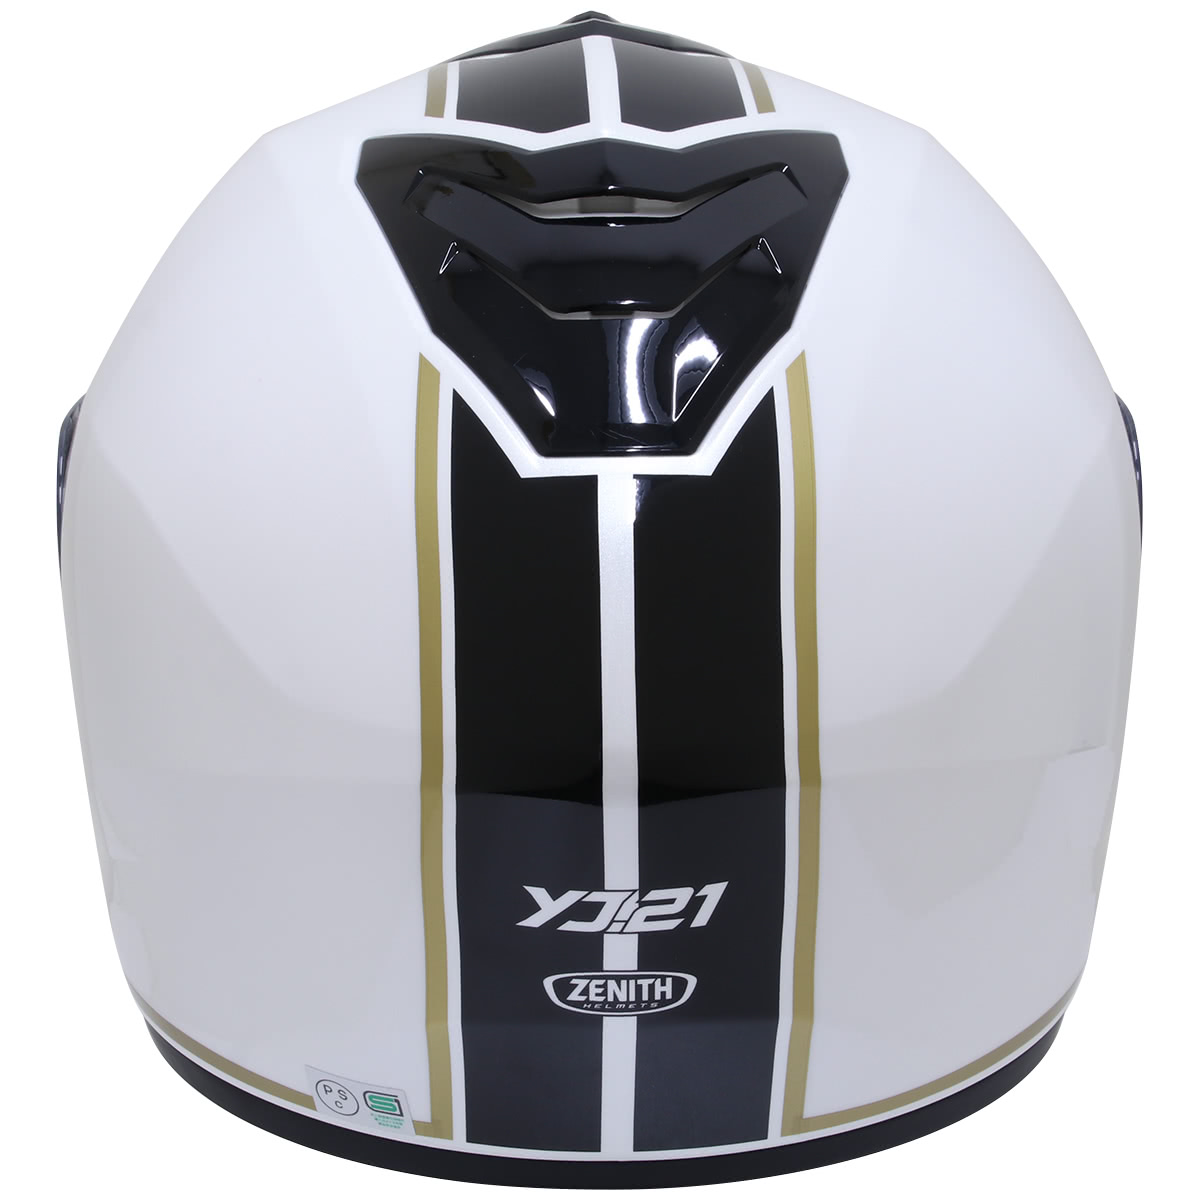 フルフェイス然としたシステムヘルメットは幅広い車種とマッチする “Y'S GEAR YJ-21 ZENITH Graphic” - メーカーイチオシ ヘルメット徹底チェック - タンデムスタイル